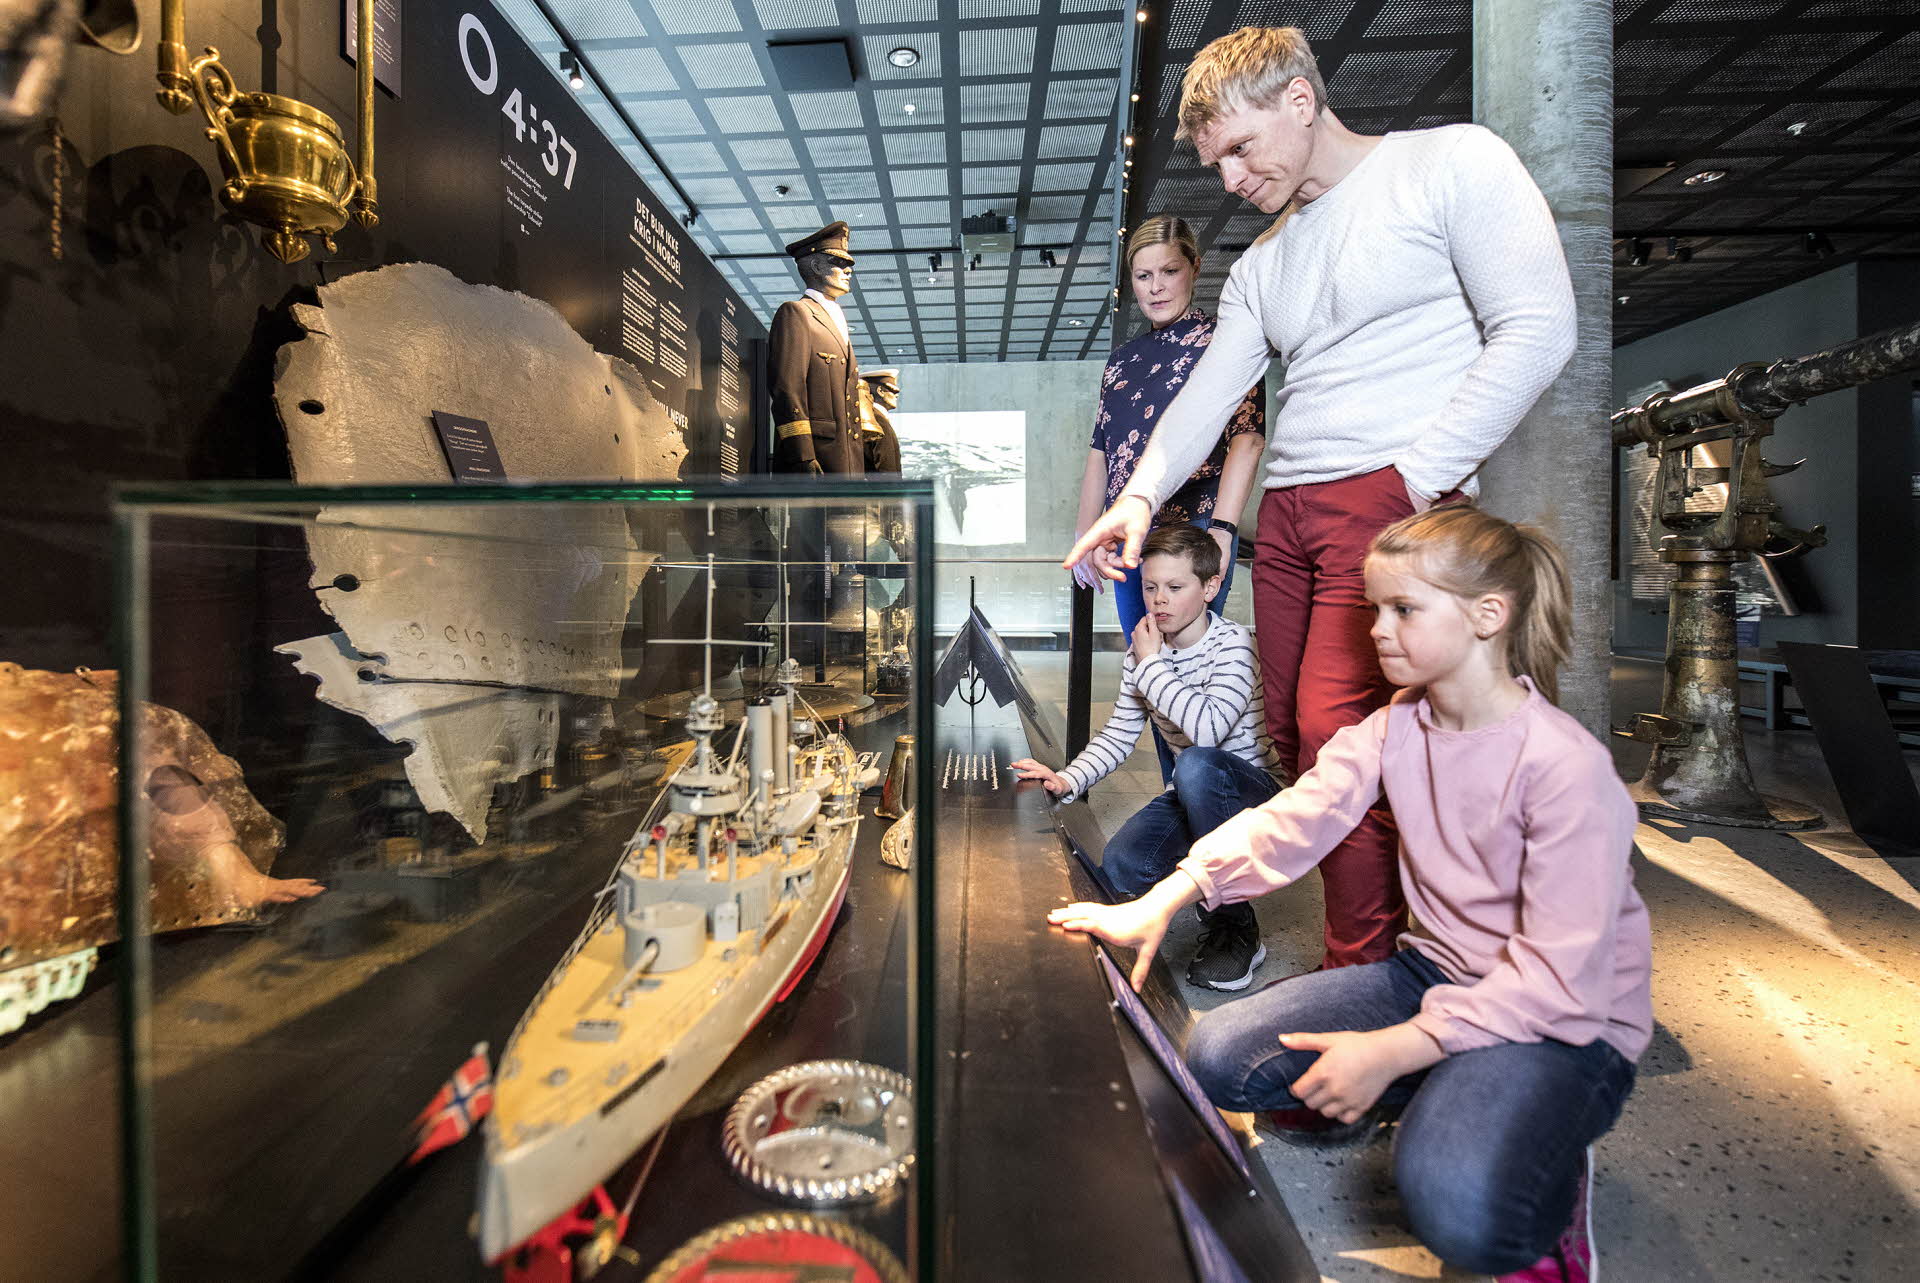 ナルヴィク戦争博物館にて、軍艦の模型のそばの家族連れ。